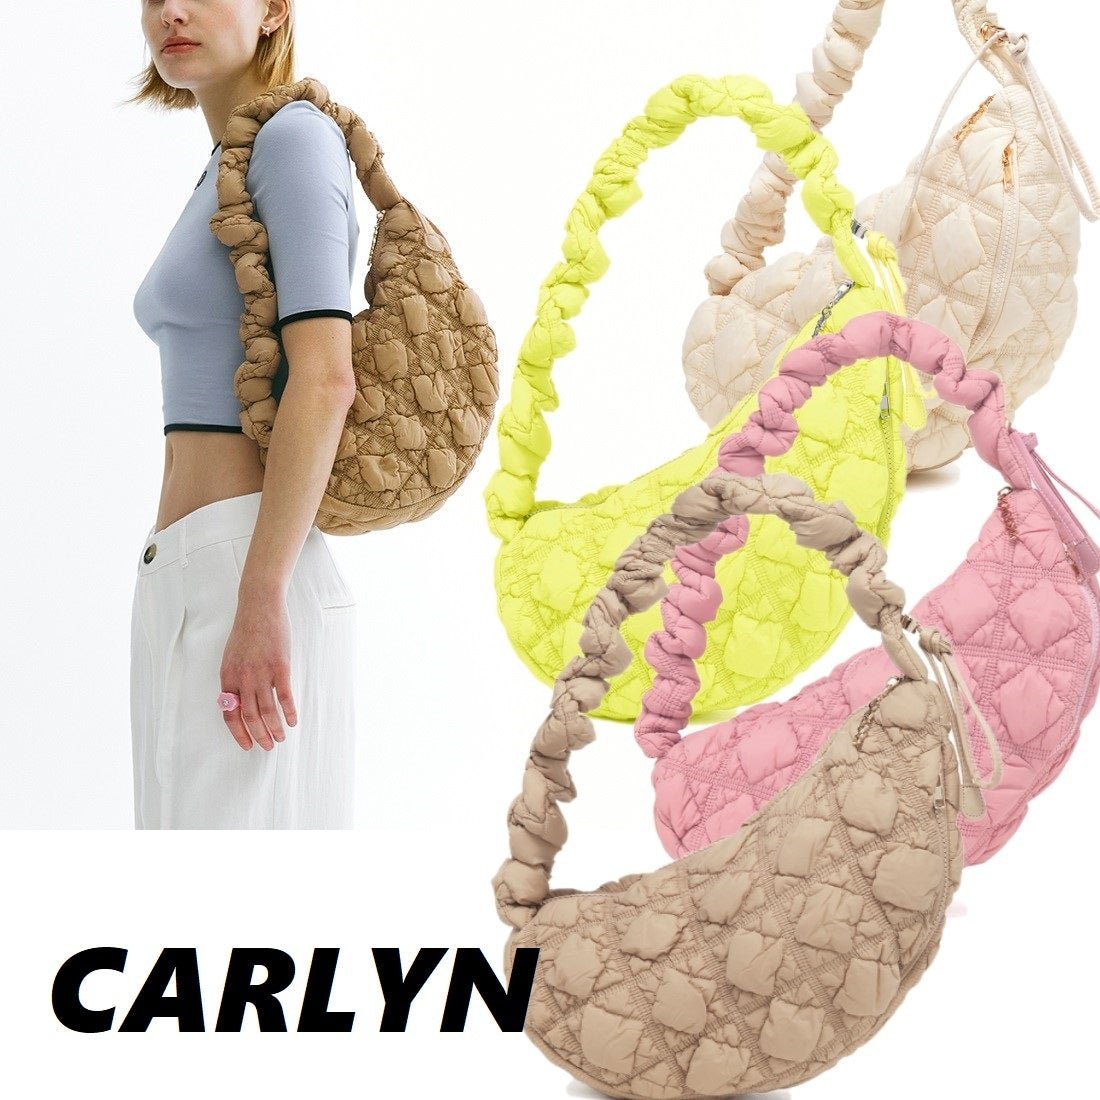 [CARLYN] Cozy 12色 韓国人気 韓国ファッション 女性バッグ ショルダーバッグ クロスバック 大学生 ファッションバッグ - コクモト KOCUMOTO